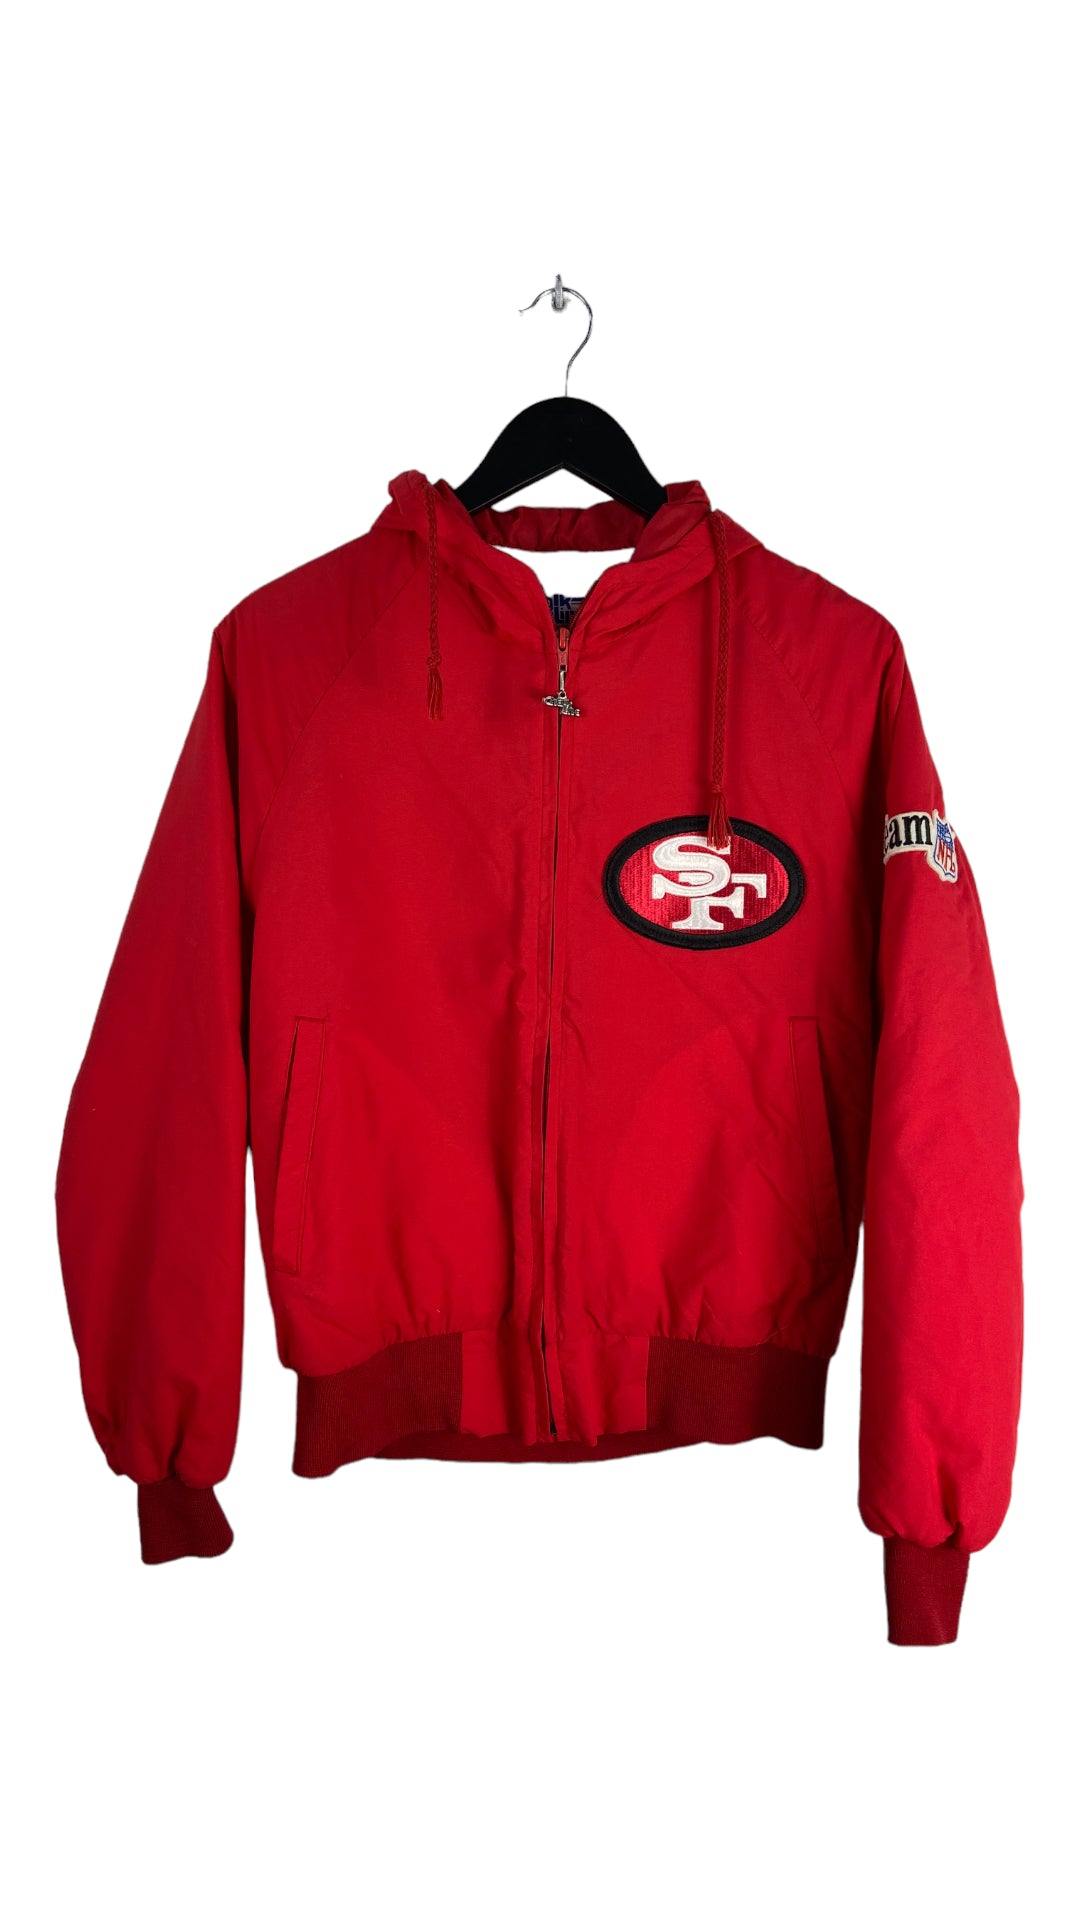 VTG San Francisco 49ers Chalkline Jacket Sz S